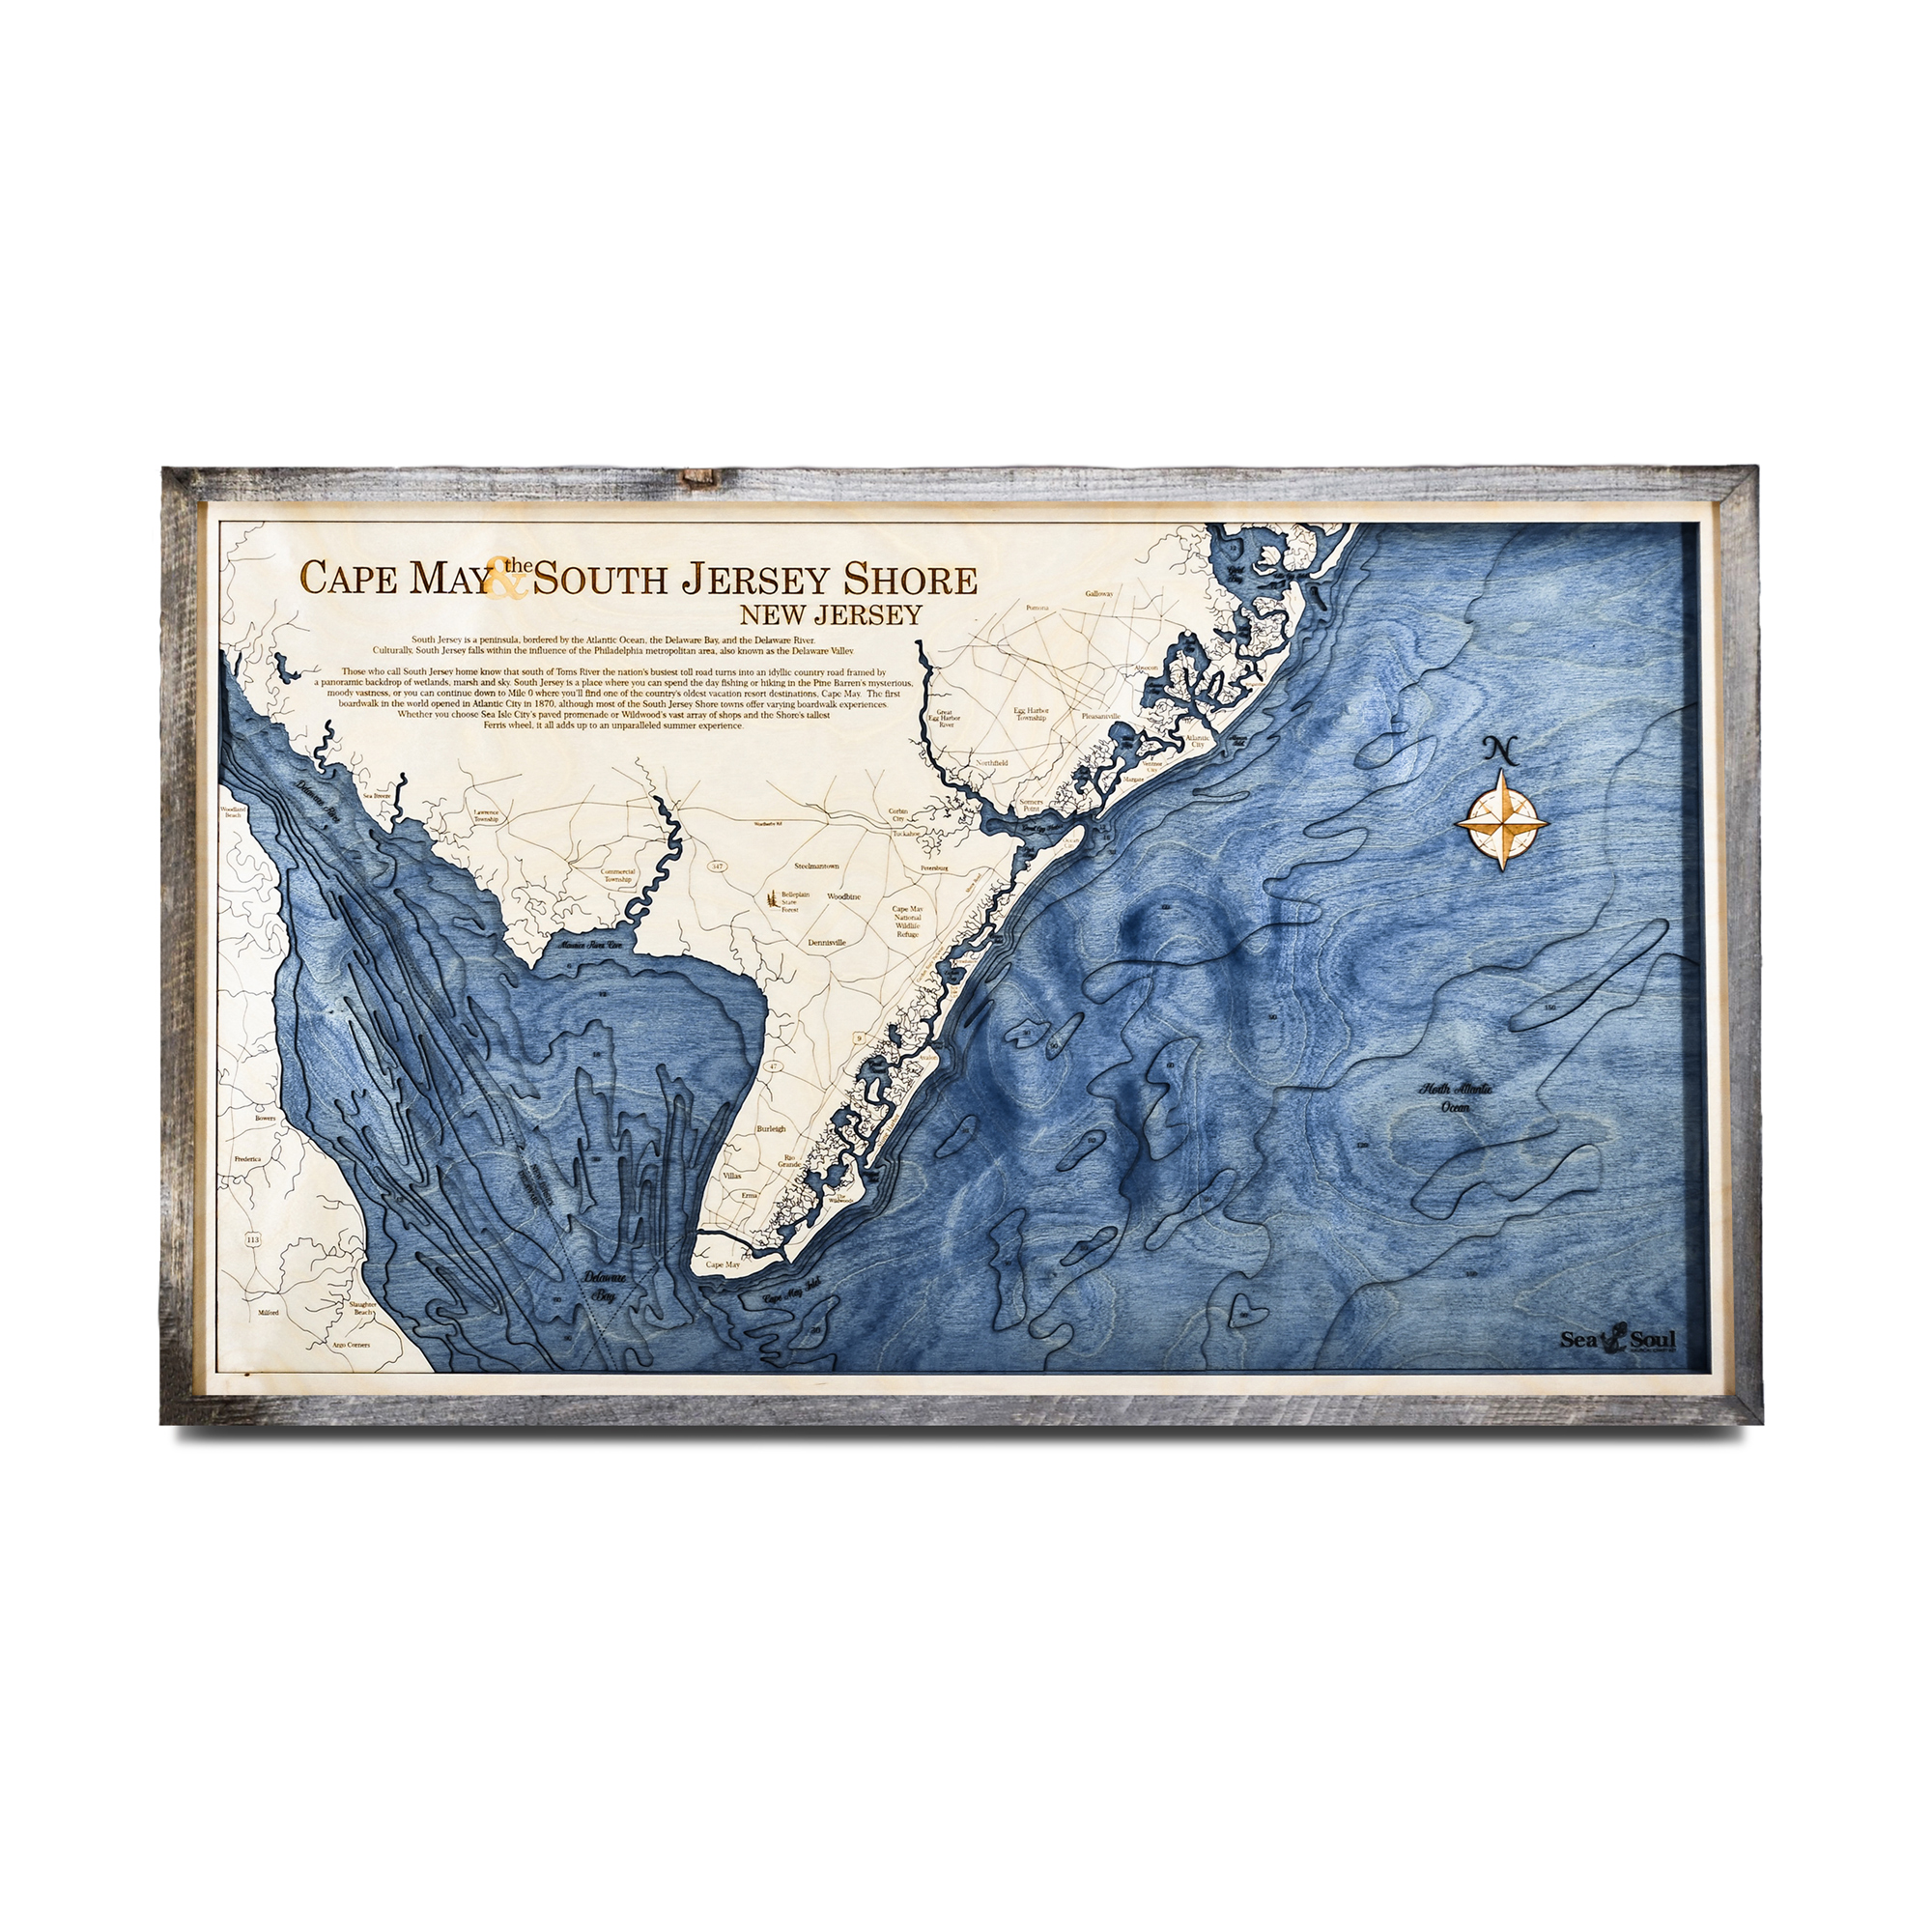 DIY Map Covered Letters - Coastal Kelder